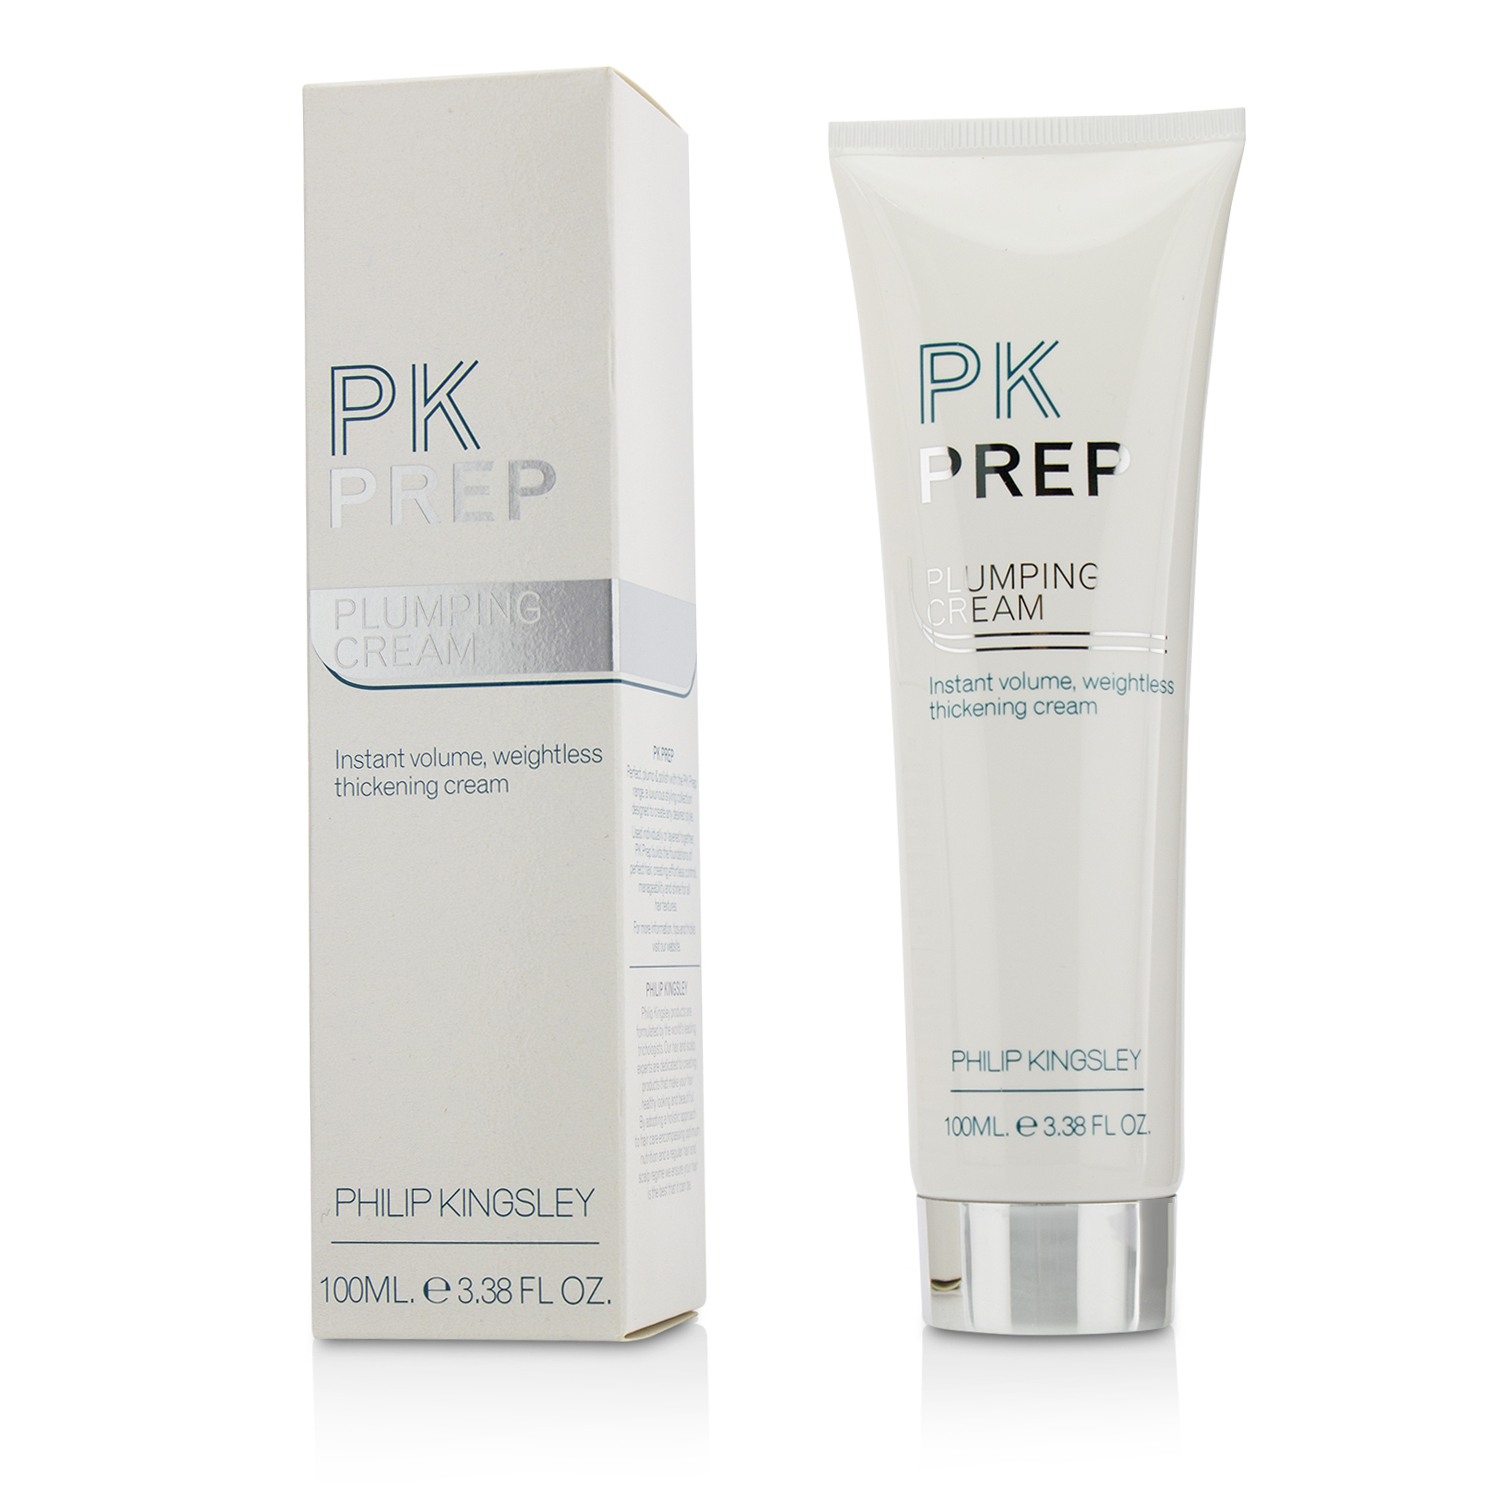 PK Prep Plumping Cream Philip Kingsley Image